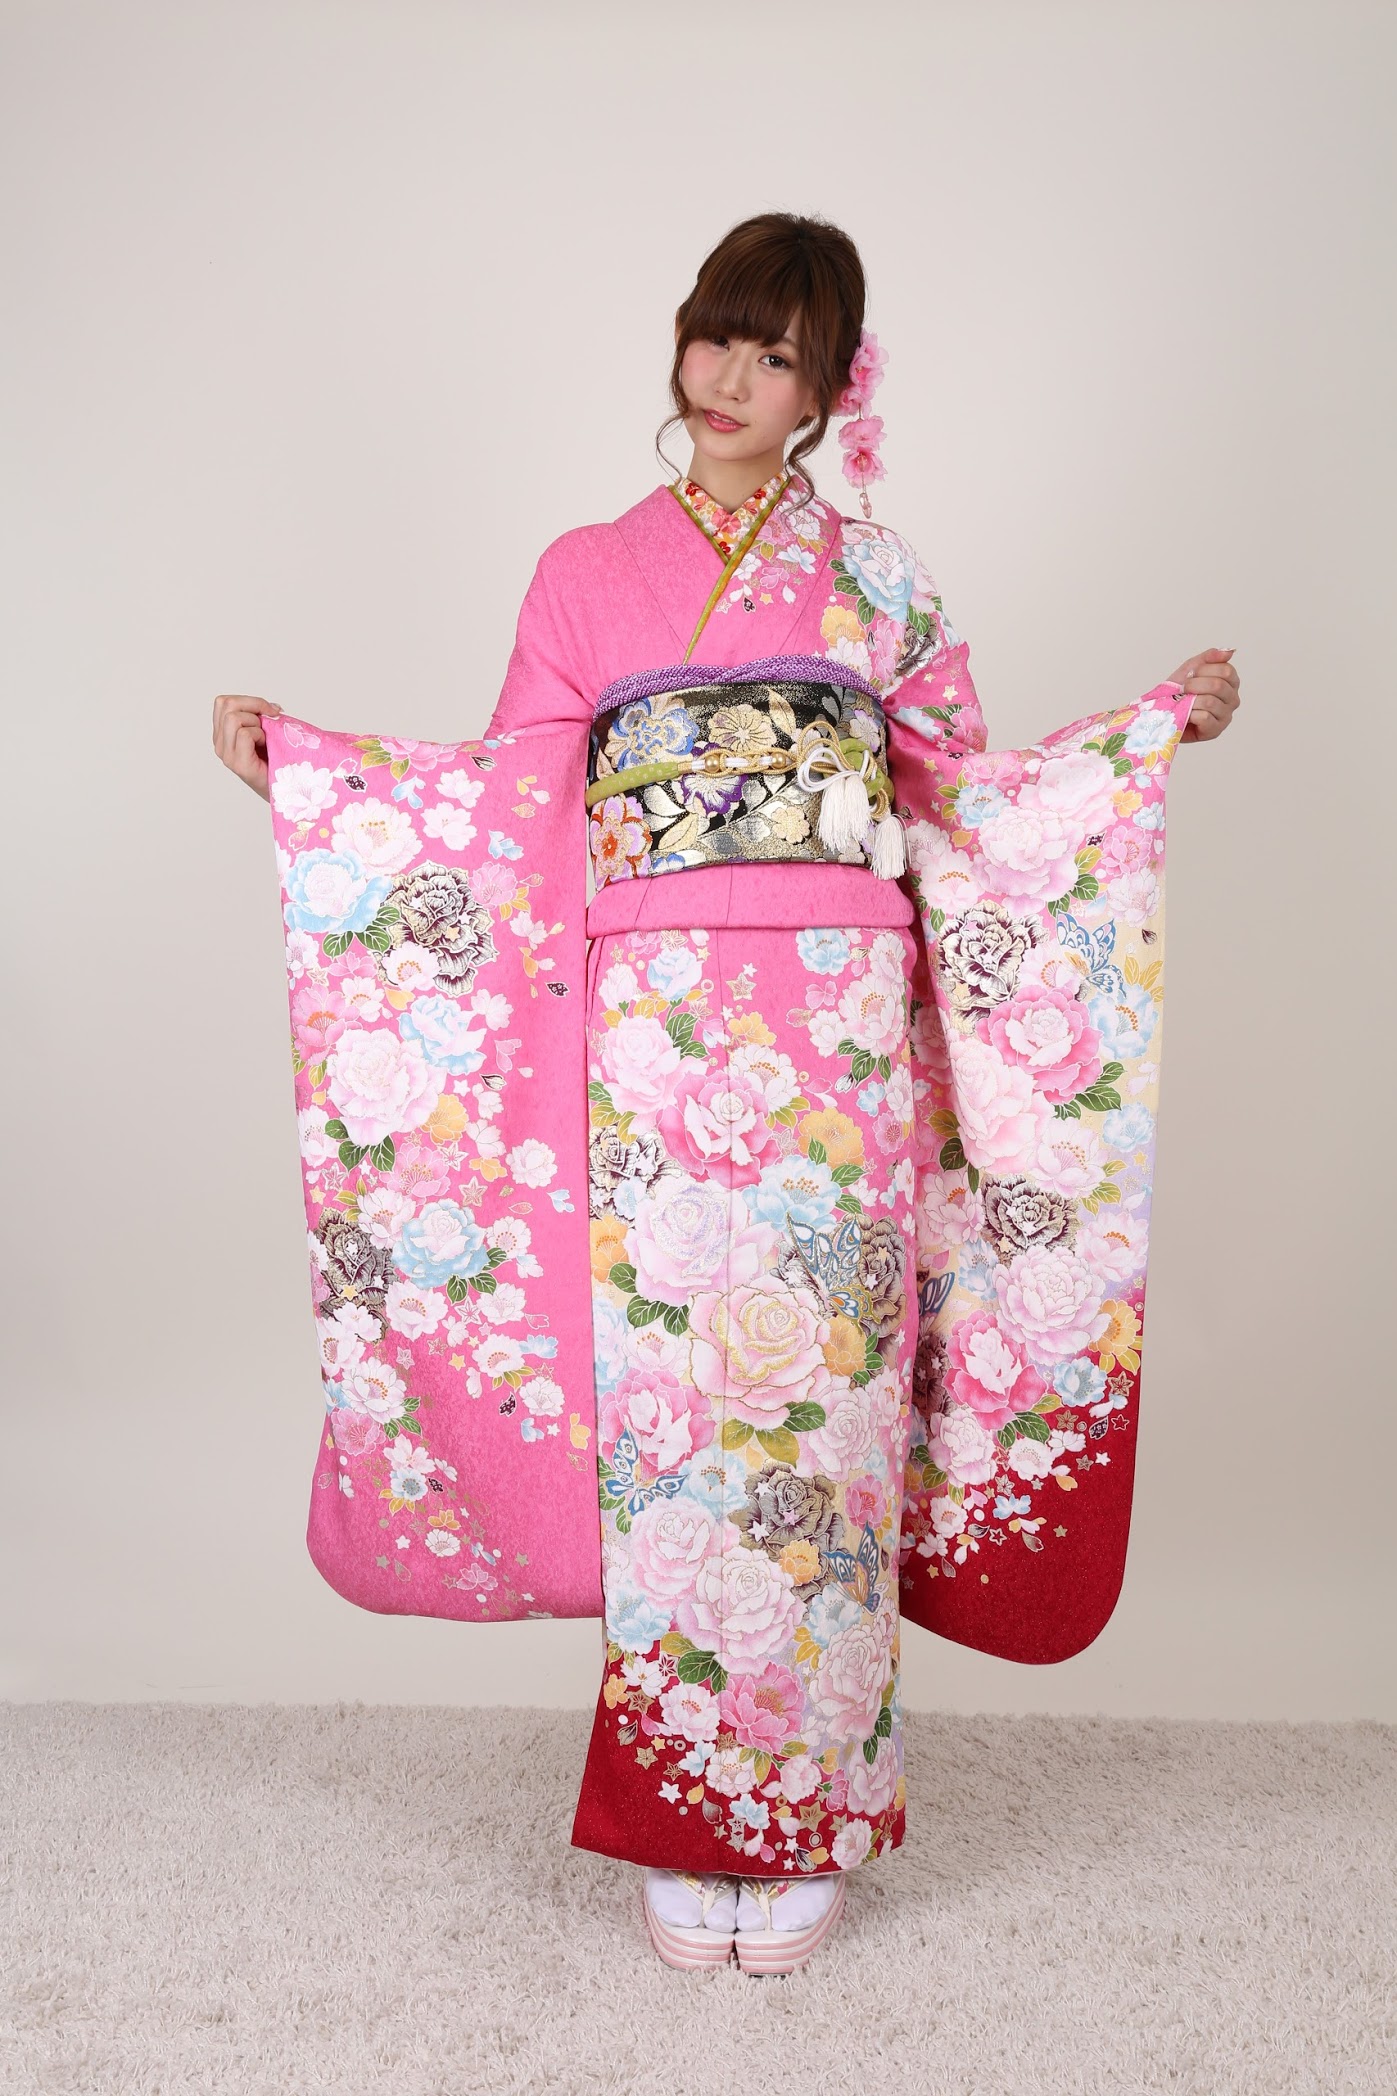 Photo session with Kimono - Kyoto Kimono Rental Wargo